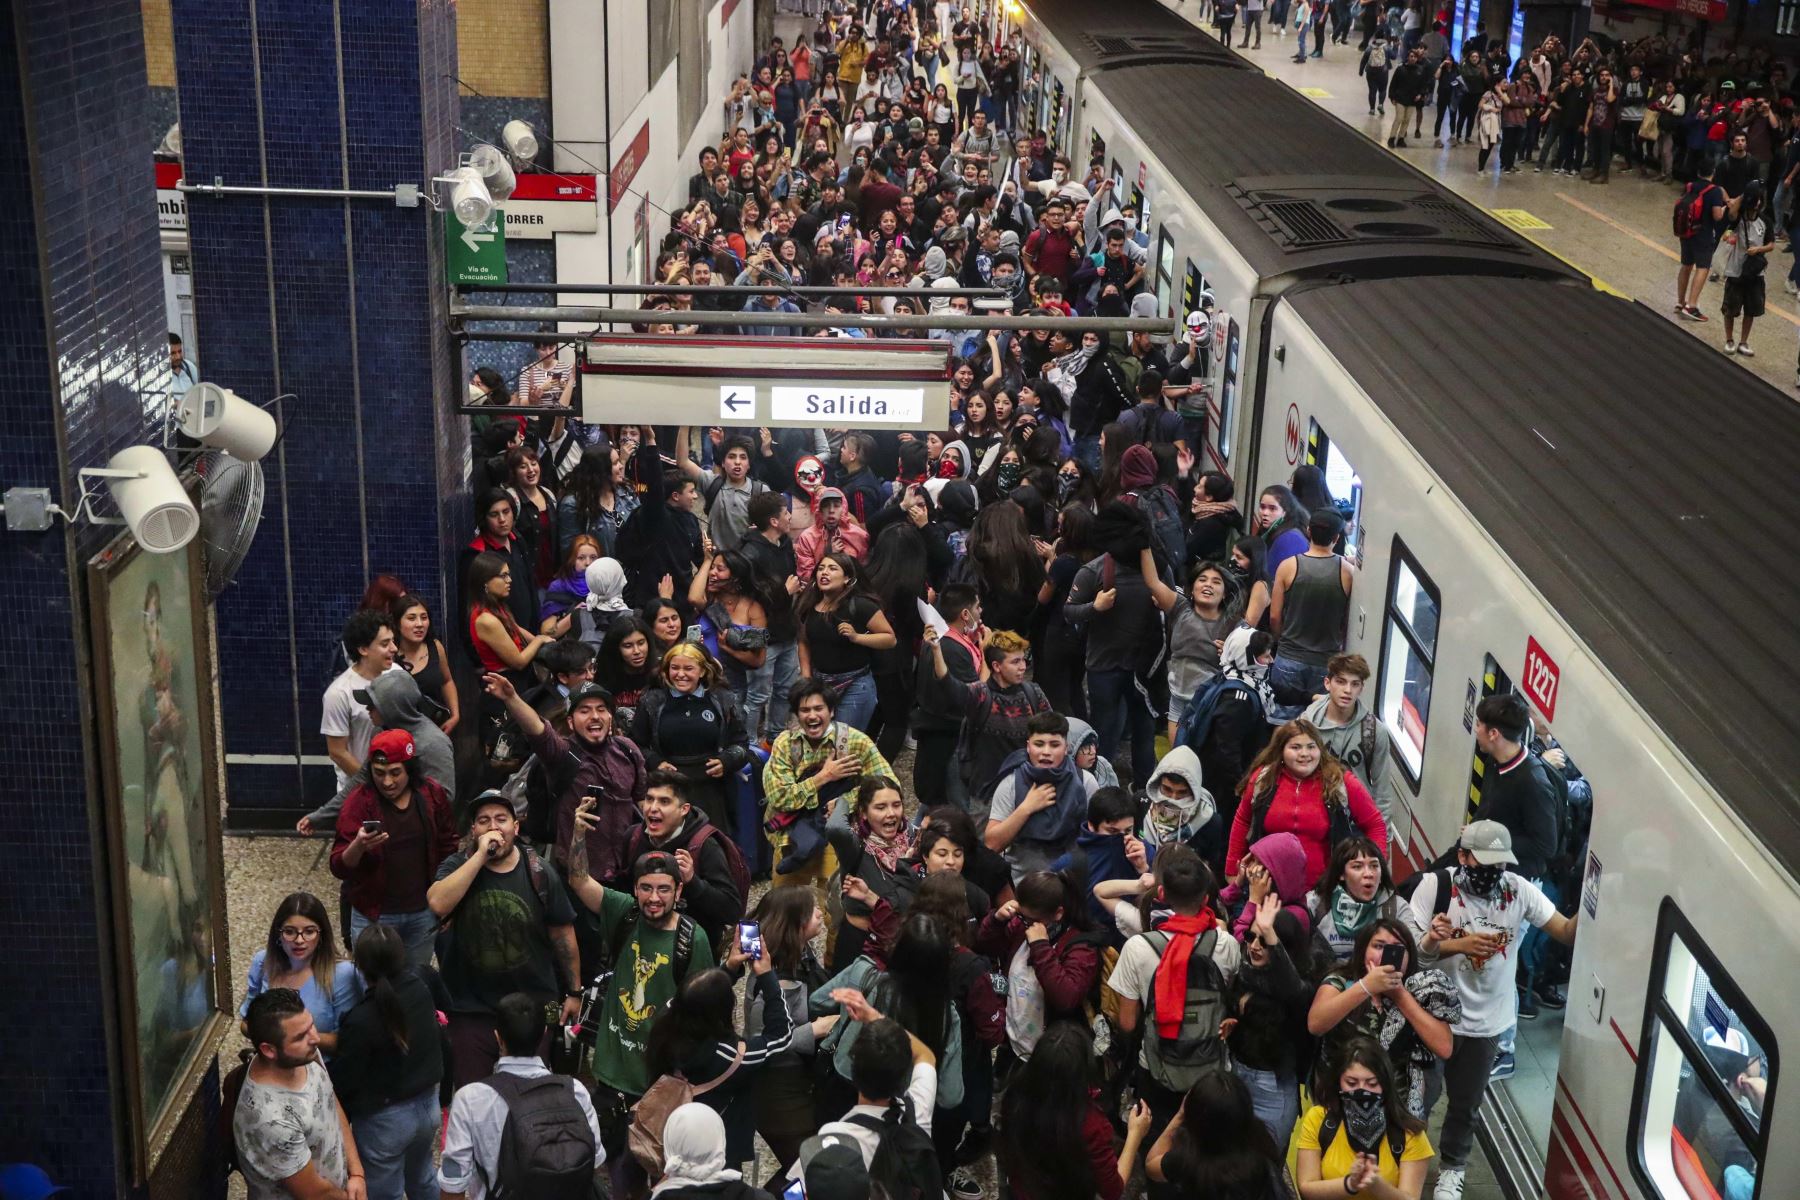 Estudiantes escolares y universitarios se unieron a una protesta masiva de evasión de tarifas en el metro de Santiago después de la tarifa más alta aumento en los últimos años, paralizando dos de sus líneas principales. Foto: EFE